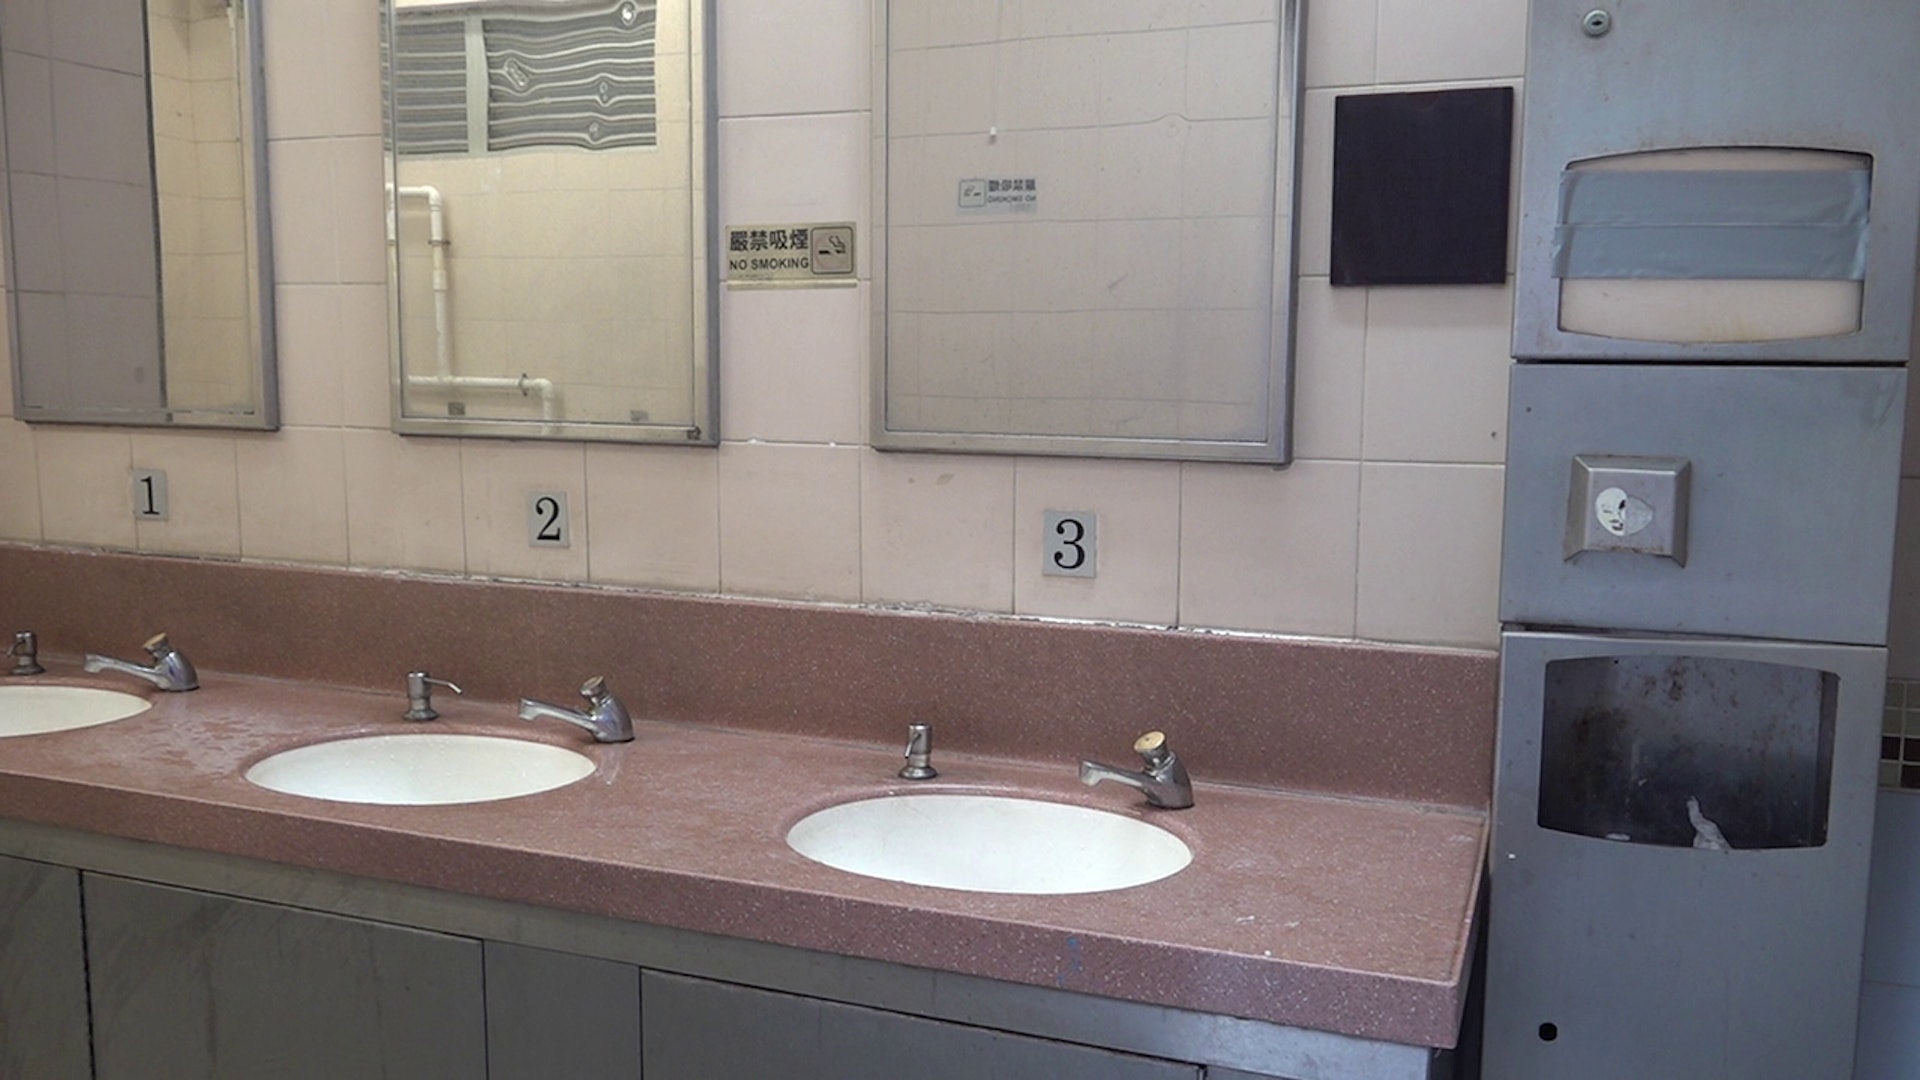 香港廁所協會11月18日公布三大最佳廁所及最急待改善廁所，兩大地獄公廁疑似被洗太平地，未見有糞便及廁紙等污穢物。(馬楚烽攝)